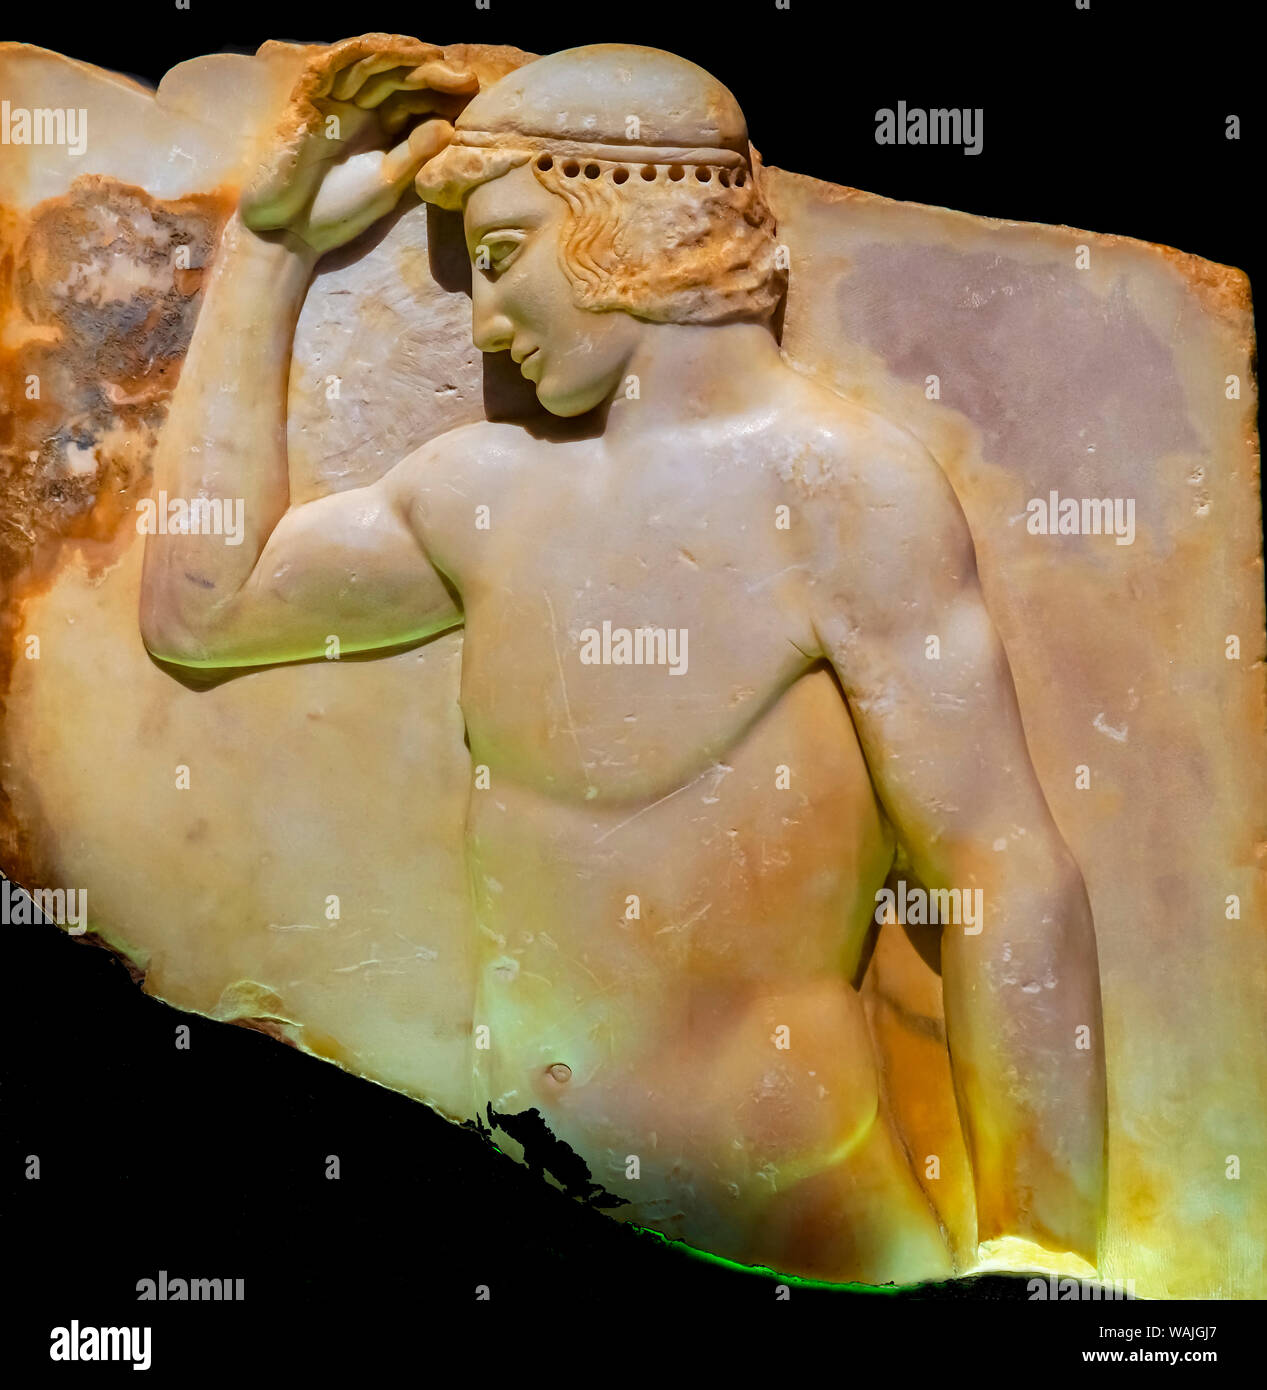 Alten Athener Griechischen athletischen Jugend Statue, Archäologisches Museum, Athen, Griechenland. Statue von Sounion in der Nähe der Tempel der Athena ab 460 v. Chr. Stockfoto